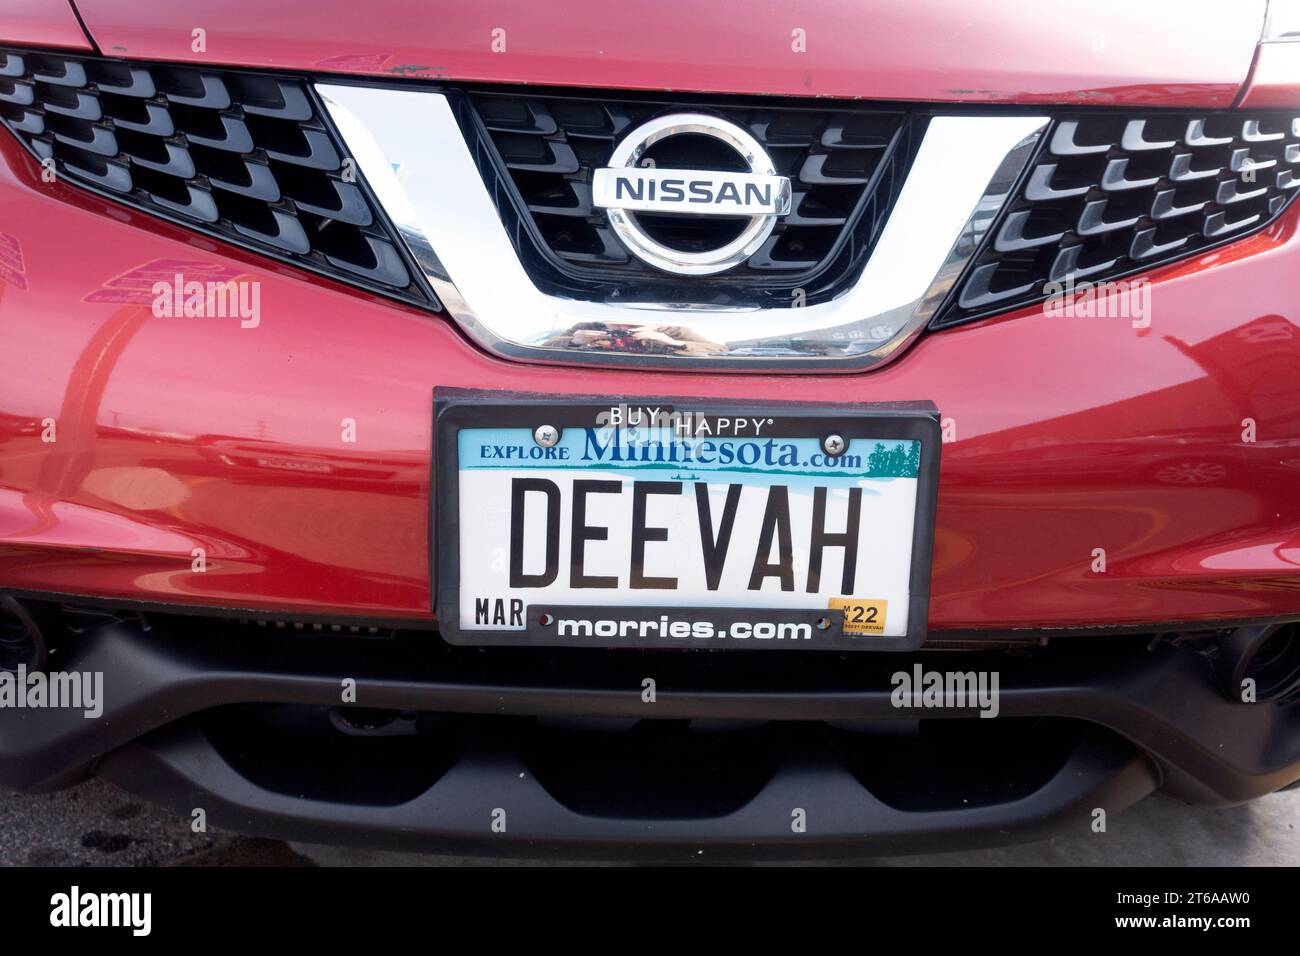 Das rote Autokennzeichen DEEVAH ist eine moderne Frau mit einer magnetischen Persönlichkeit. St. Paul Minnesota MN USA Stockfoto